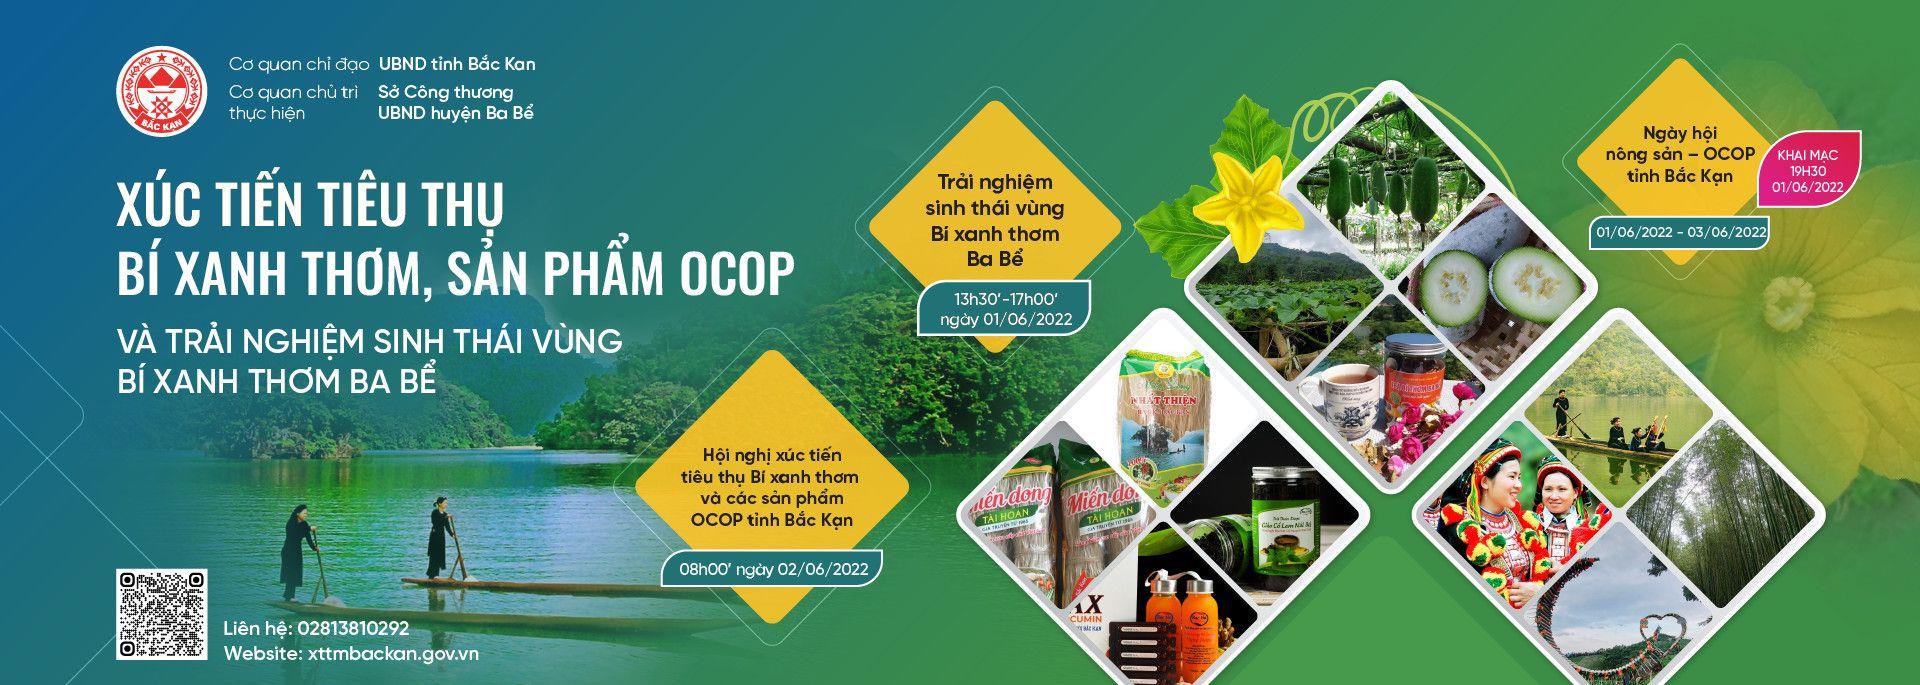 Hỗ trợ tổ chức sự kiện Xúc tiến tiêu thụ Bí xanh thơm, sản phẩm OCOP và Trải nghiệm sinh thái vùng Bí xanh thơm Ba Bể tỉnh Bắc Kạn năm 2022